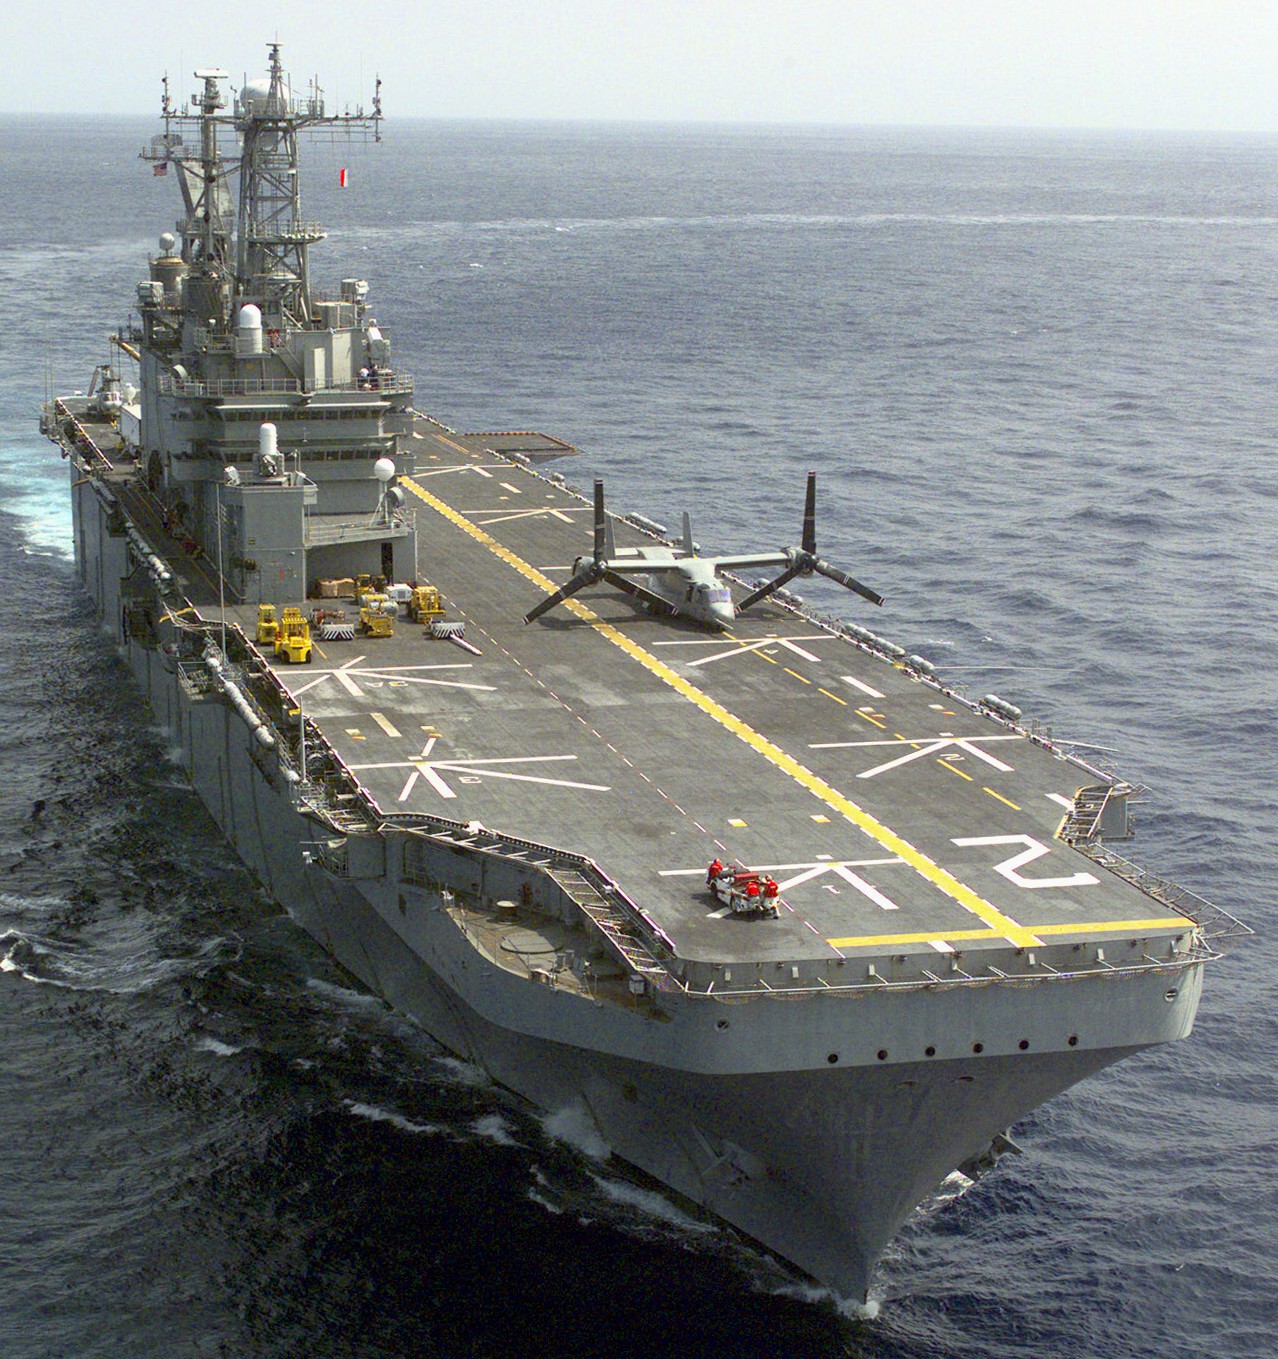 lha-2 uss saipan tarawa class amphibious assault ship us navy 98 mv-22 osprey testing